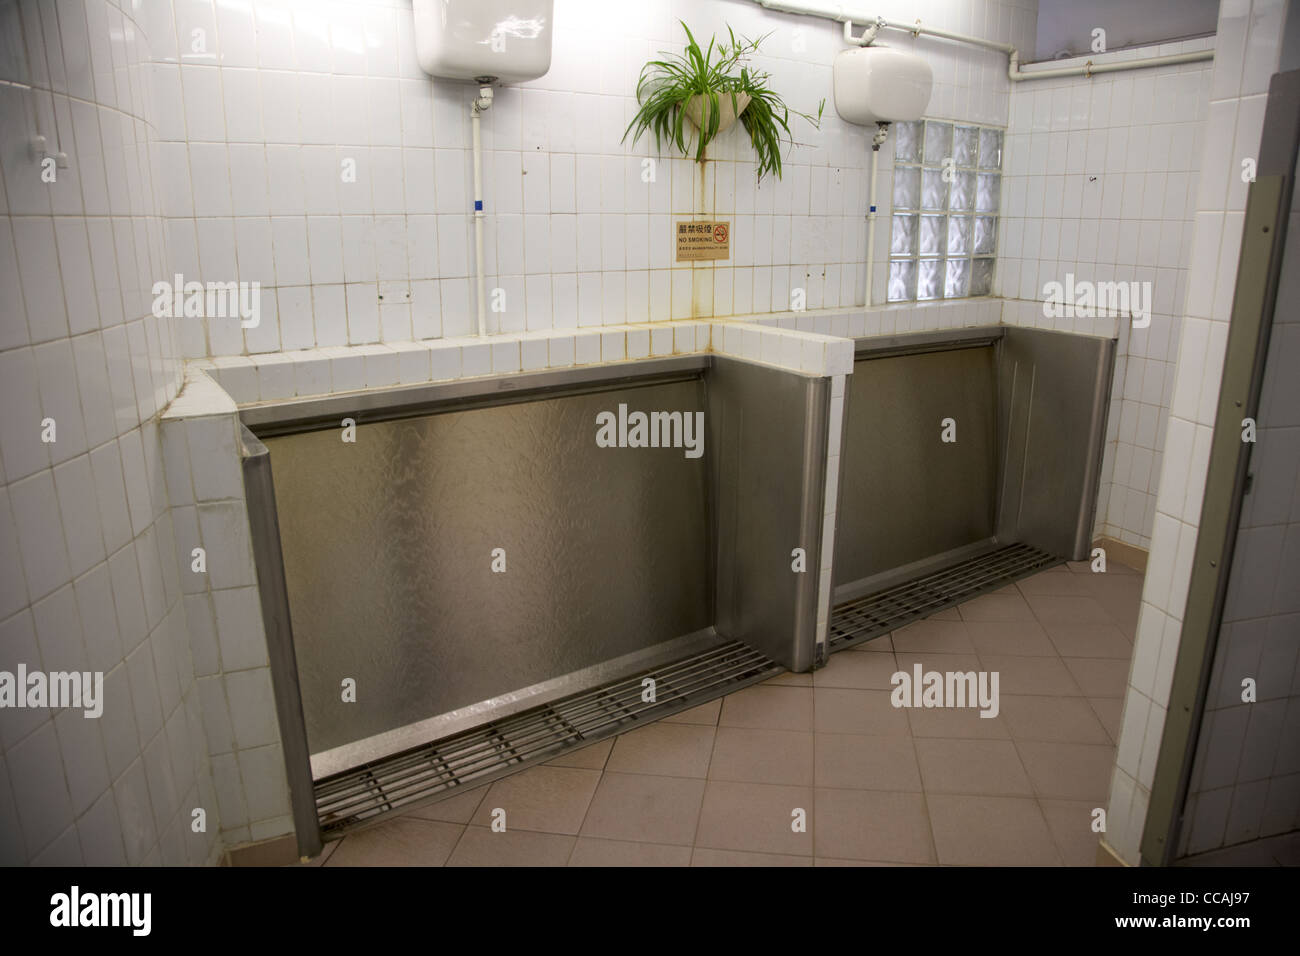 Pubblico sanistall cascata orinatoi in un bagno pubblico di hong kong RAS di Hong kong cina asia Foto Stock